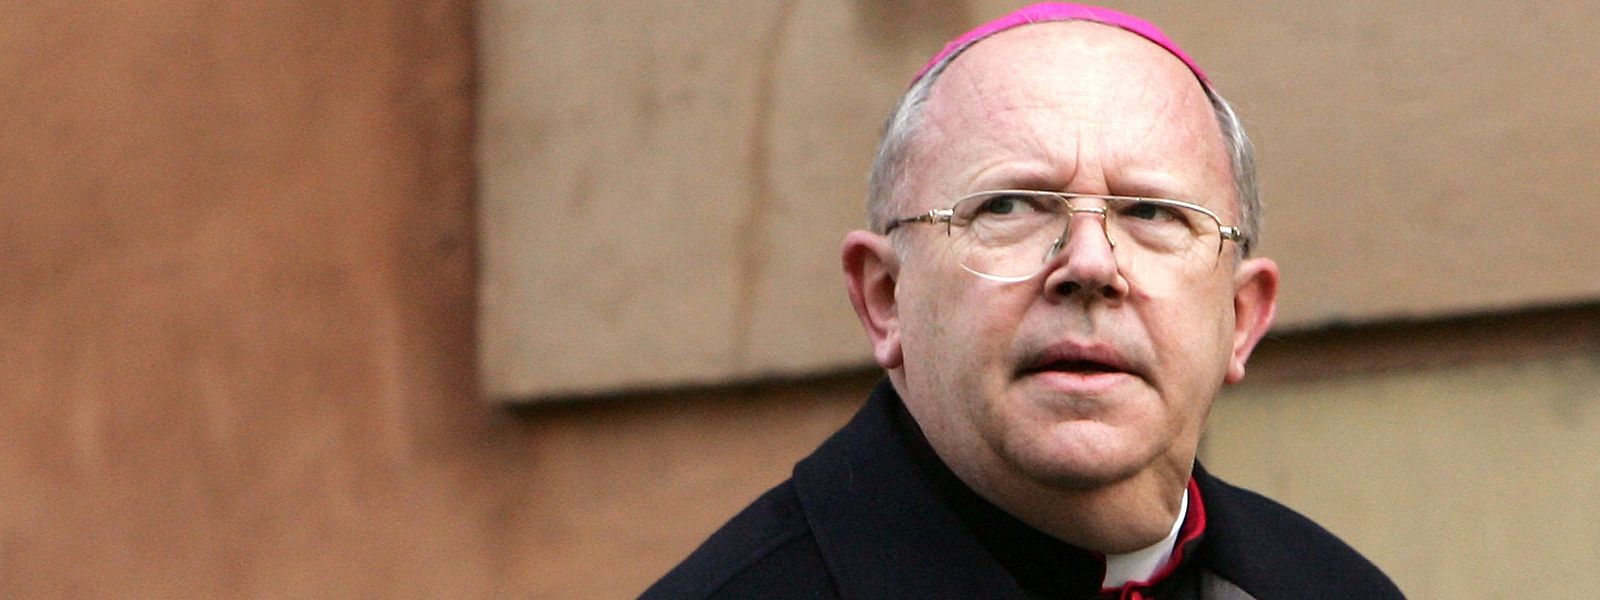 Nach dem Missbrauchsgeständnis des französischen Kardinals Jean-Pierre Ricard hat die Staatsanwaltschaft in Marseille Vorermittlungen wegen schwerer sexueller Belästigung gegen den Geistlichen eingeleitet.